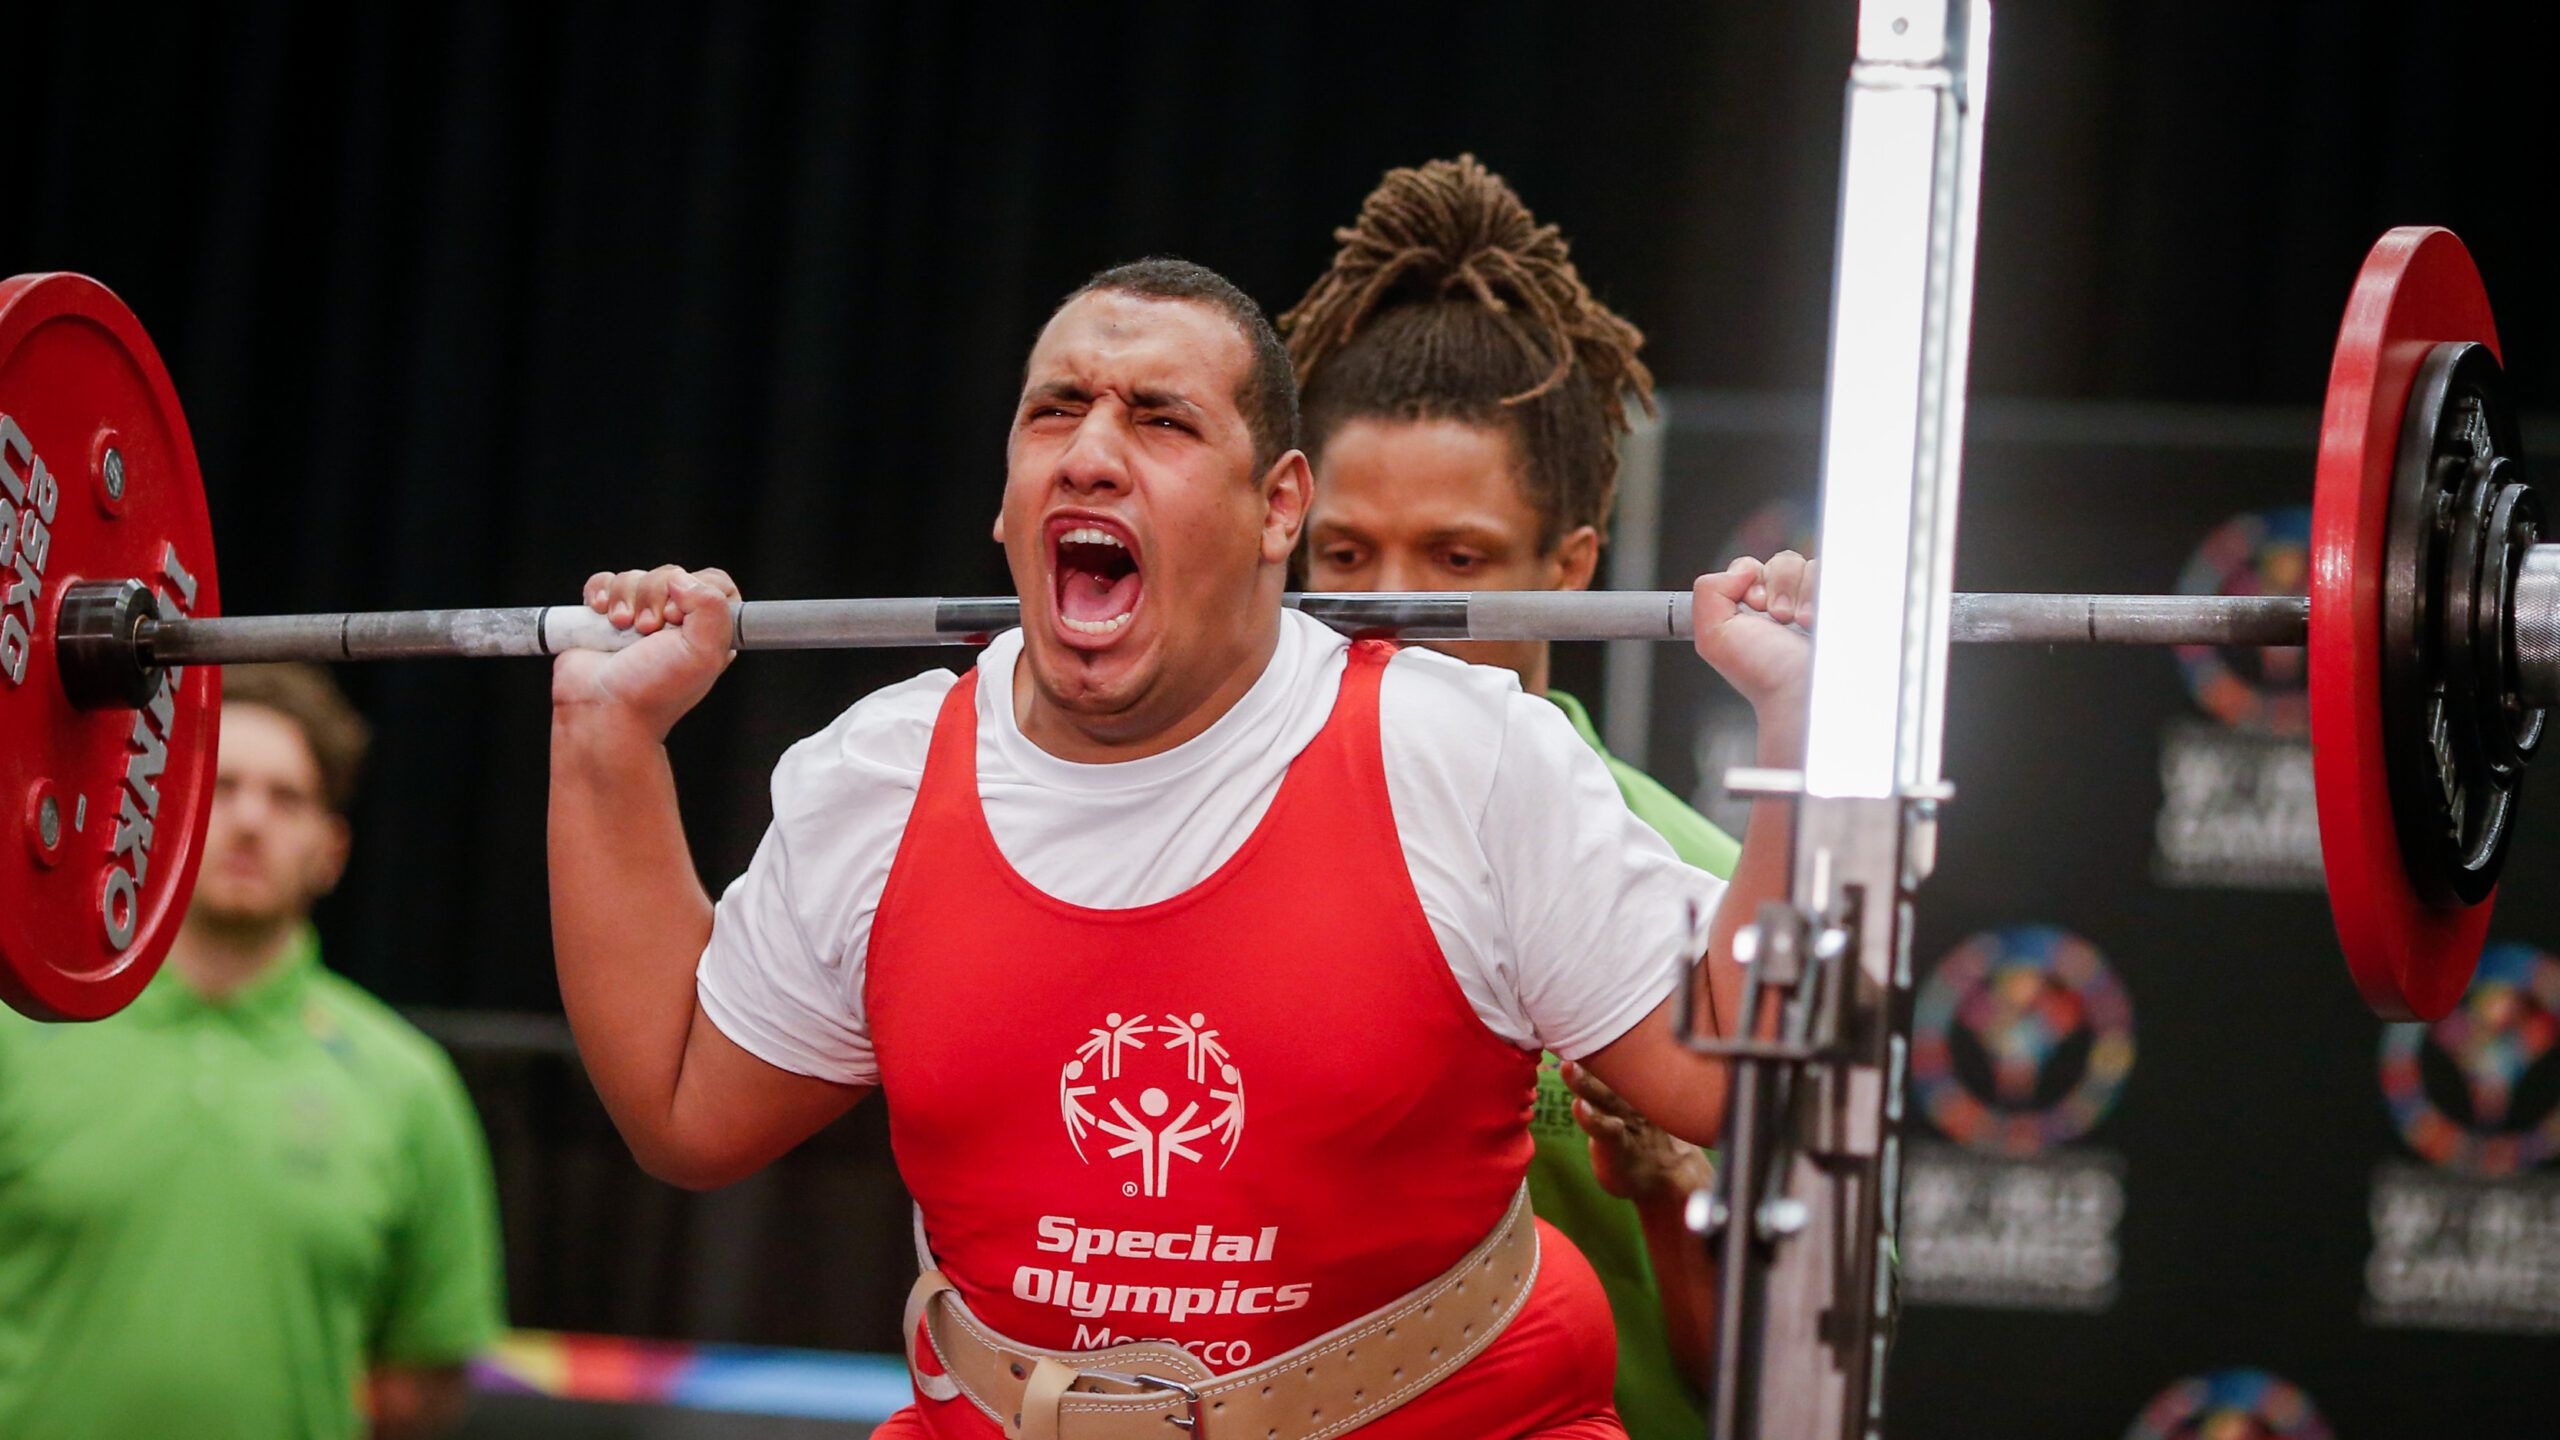 Mann der beim Gewichteheben aufschreit vor Anstrengung. Trägt ein rotes T-Shirt mit den Special Olympics daraufstehend.